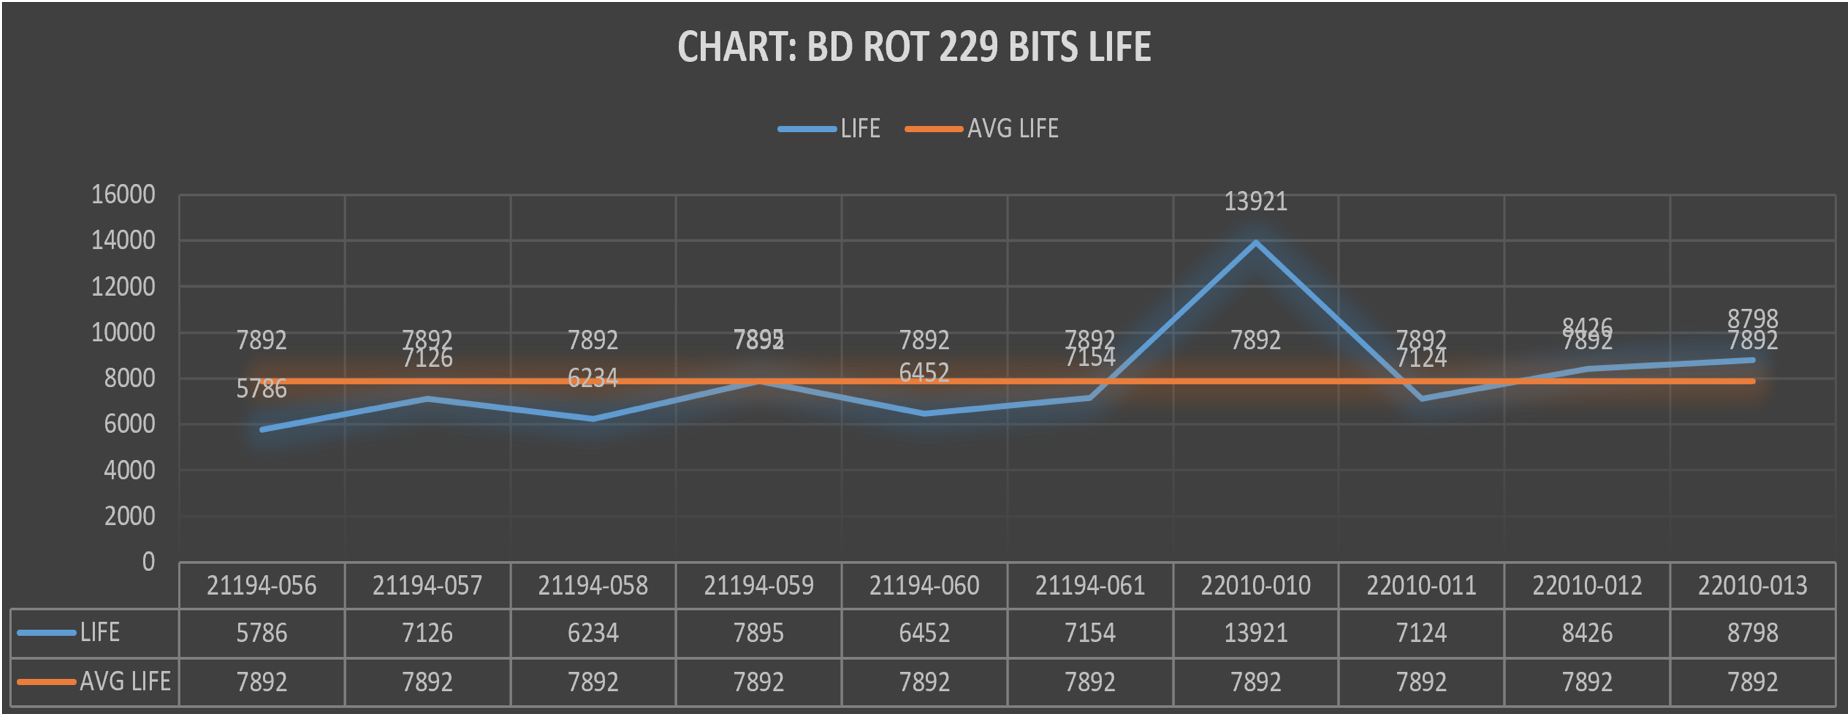 ROT 229 bits life chart